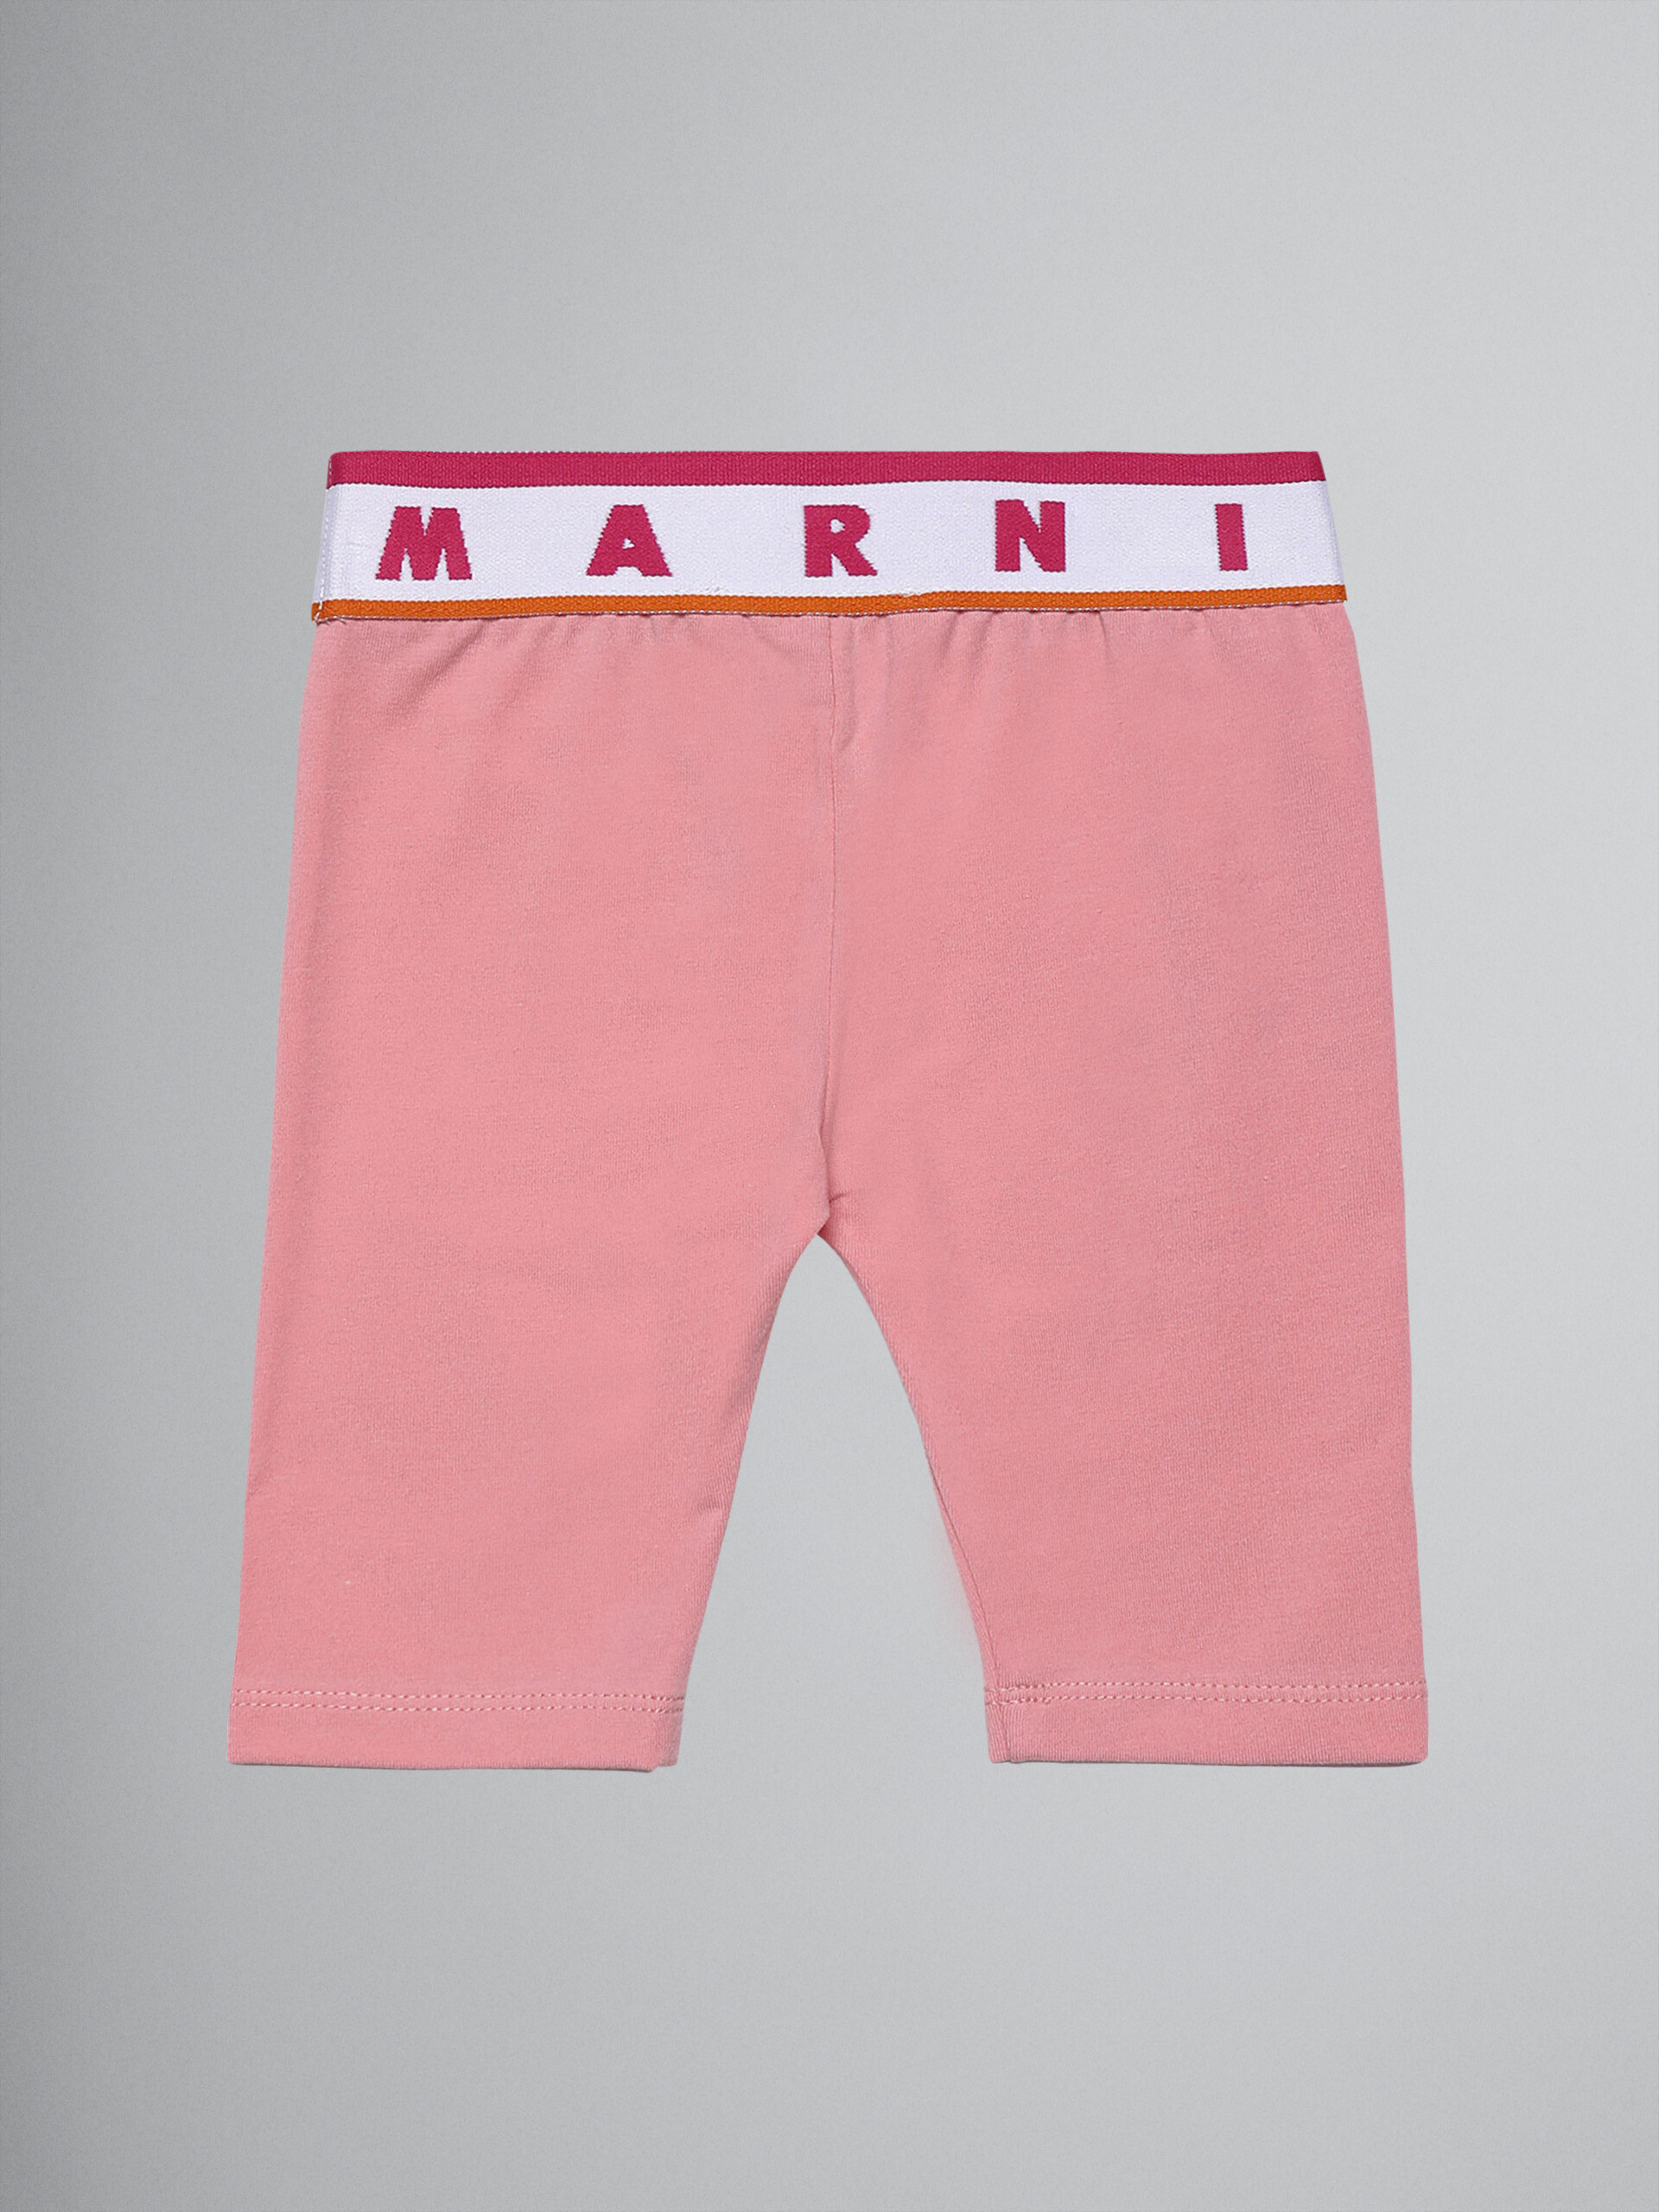 Leggings aus pinkfarbenem Stretch-Jersey mit Logo - Hosen - Image 2